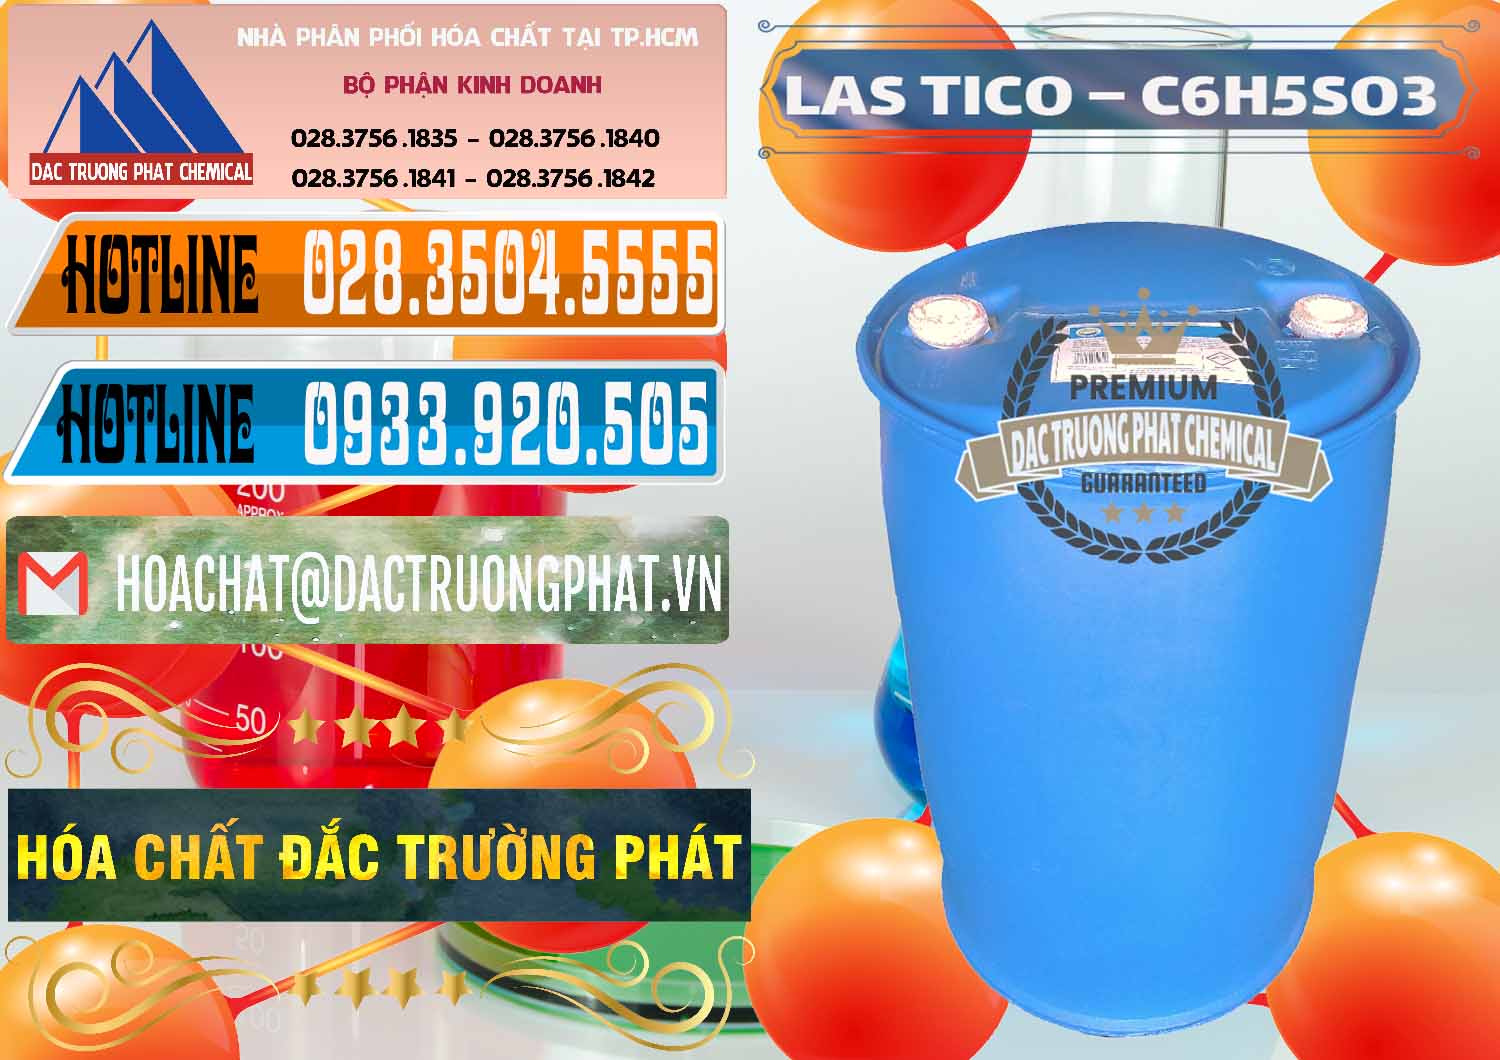 Công ty chuyên cung ứng ( bán ) Chất tạo bọt Las H Tico Việt Nam - 0190 - Đơn vị chuyên kinh doanh _ bán hóa chất tại TP.HCM - stmp.net